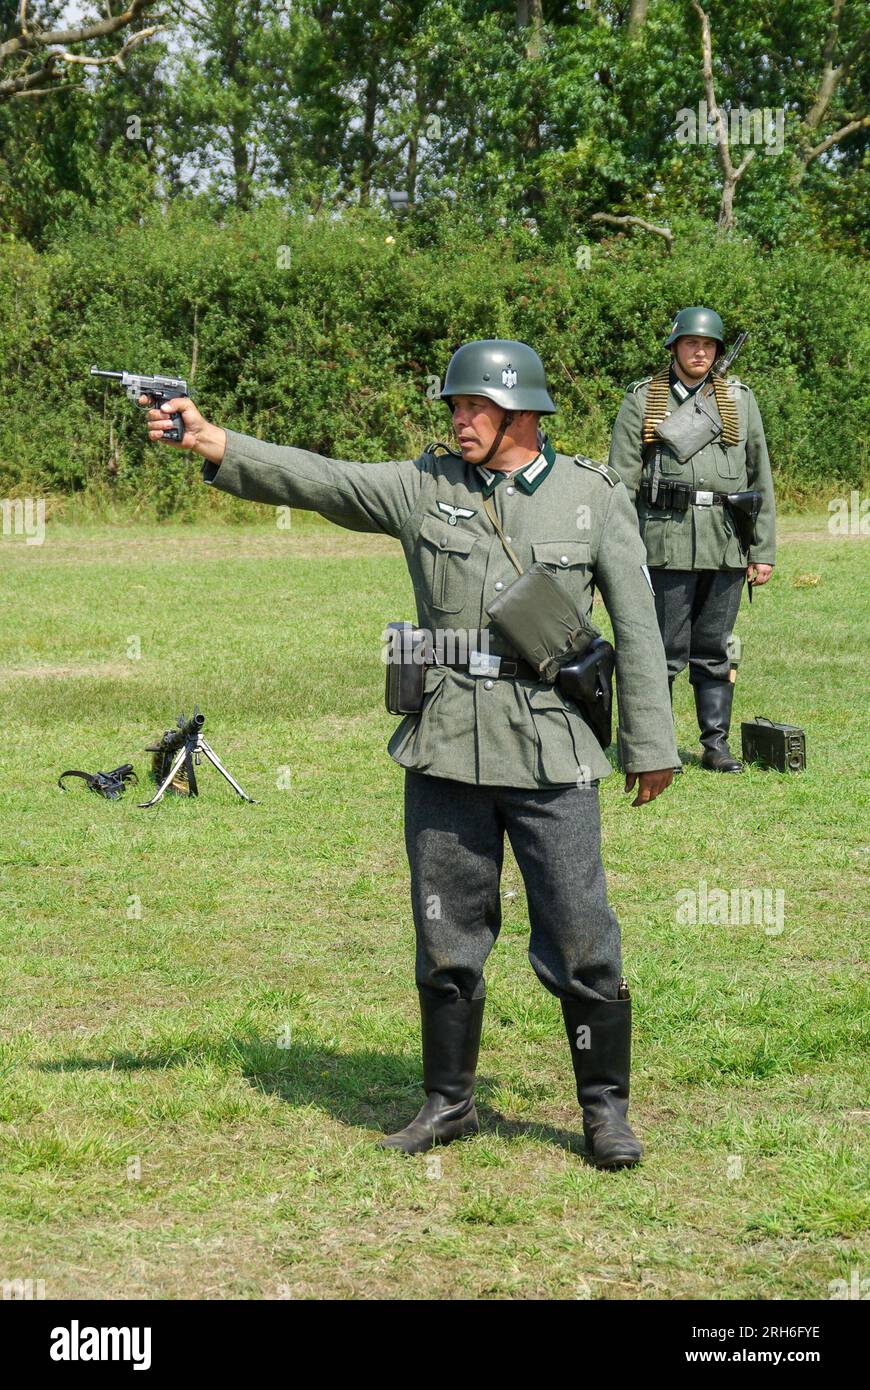 Reenactors, Reenactment deutscher Soldaten des Zweiten Weltkriegs. Infanteristen der Wehrmacht. Uniform. Schießpistole Stockfoto